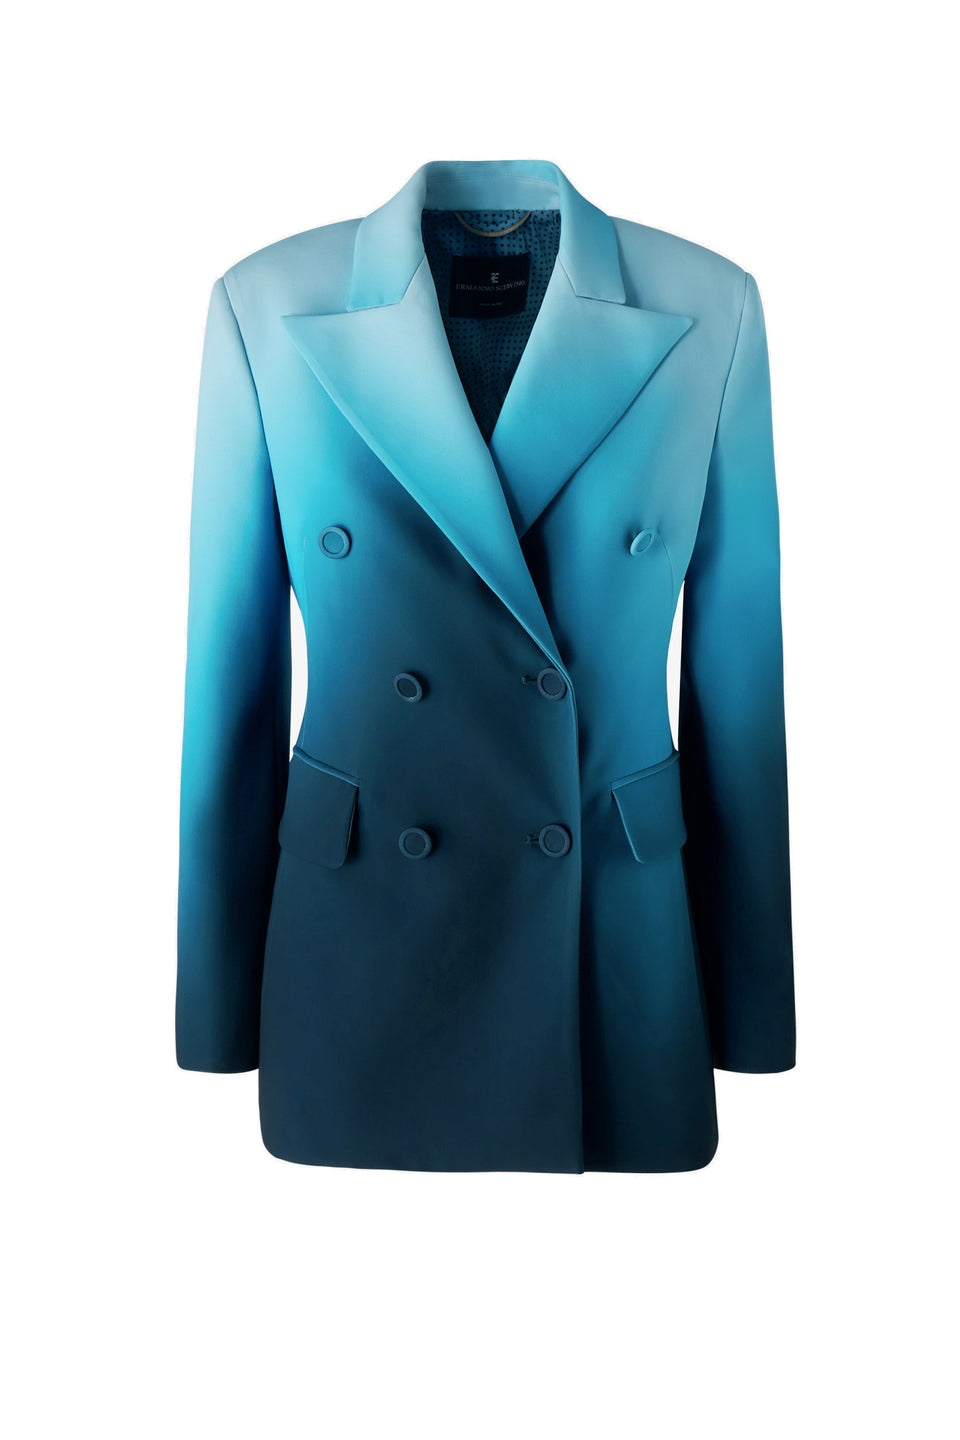 Blue fabric jacket